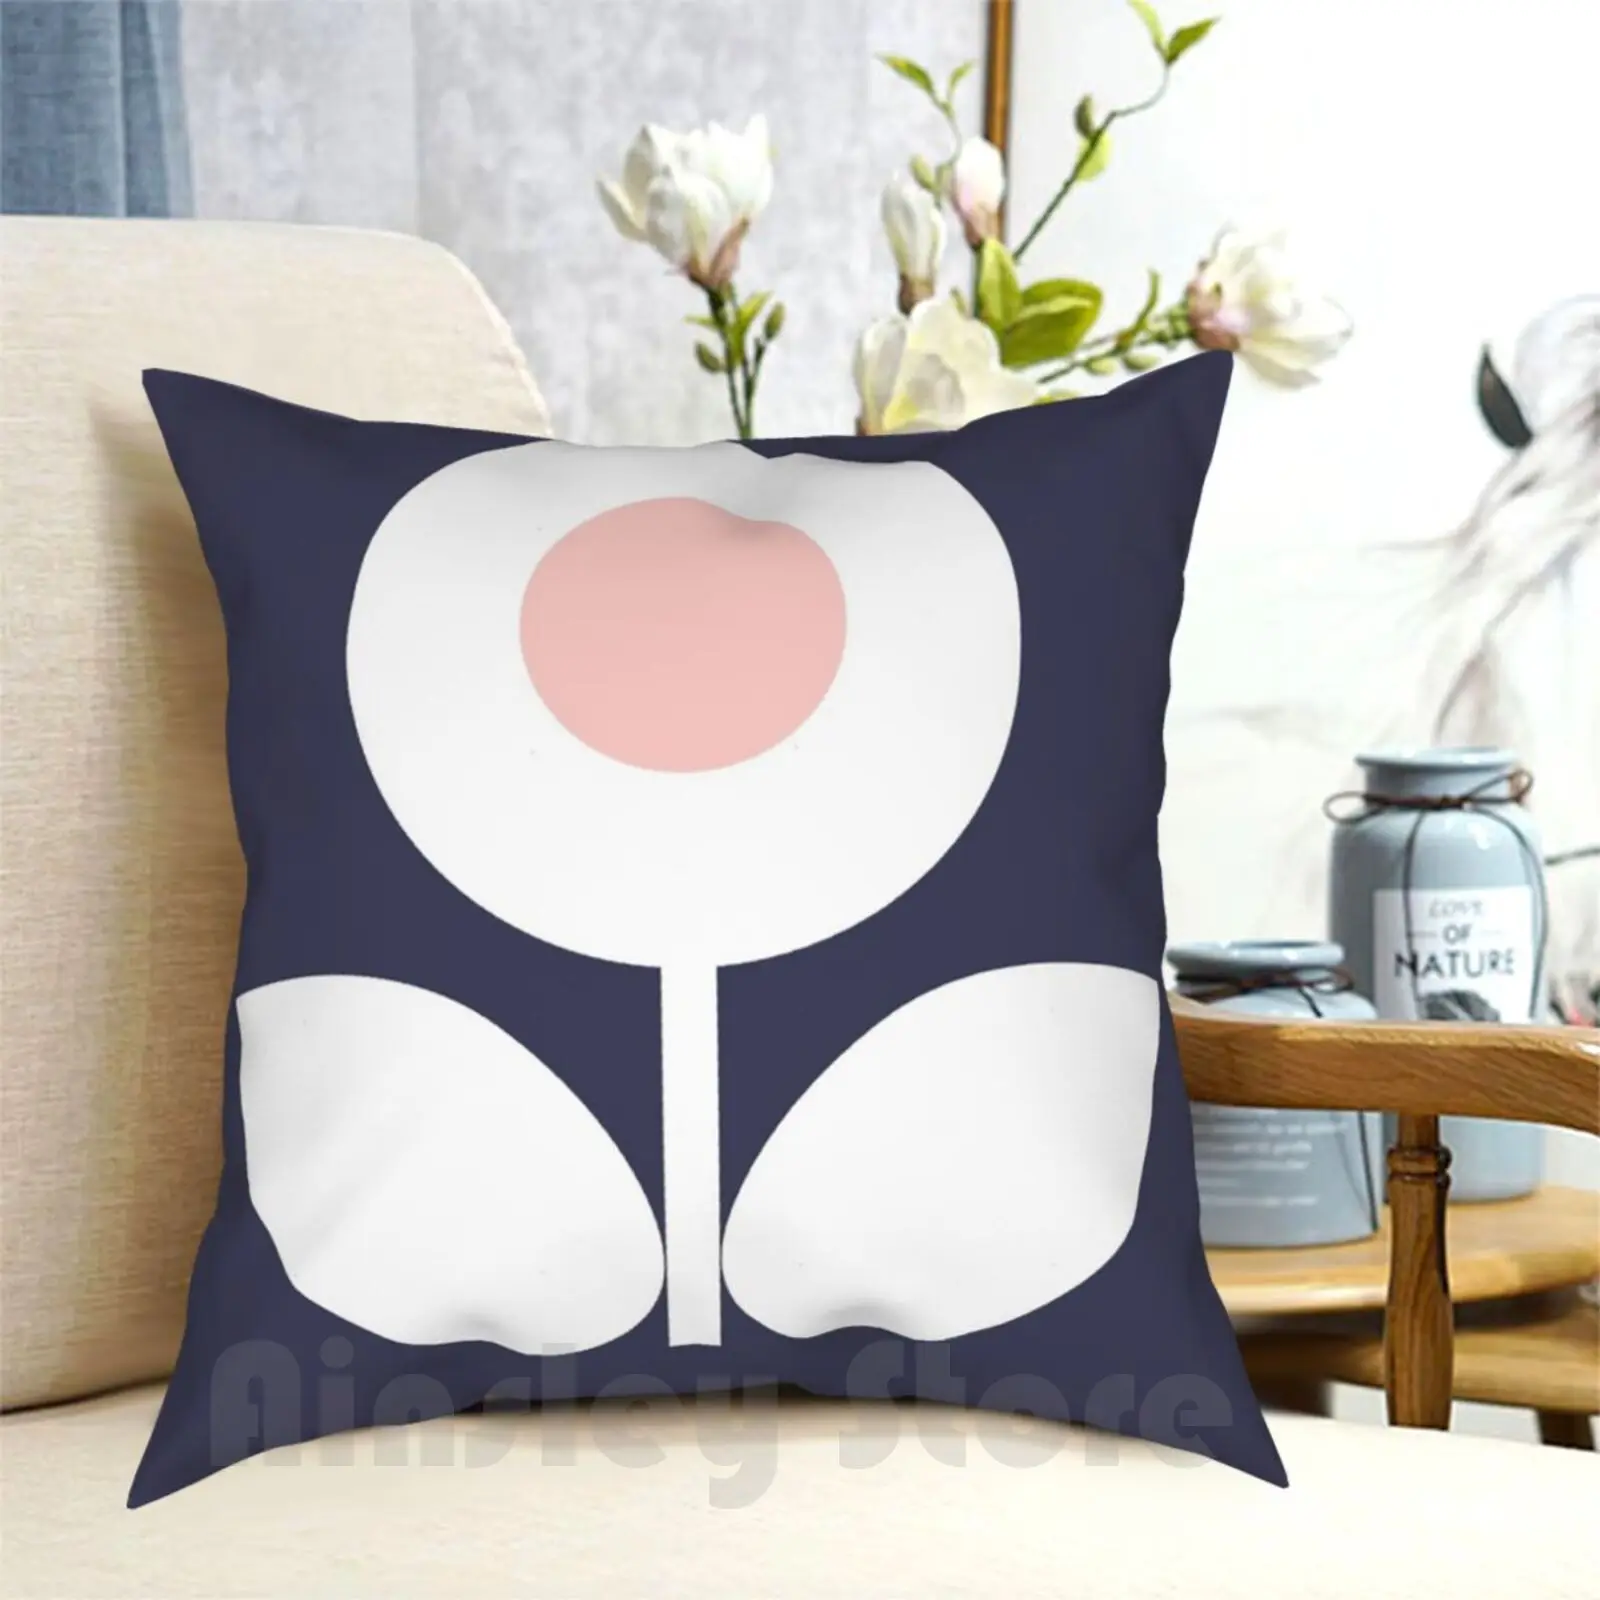 

Подушка bloomin Bluebell, домашняя мягкая декоративная подушка с рисунком, розовая, синяя, белая, средневековая, современная, Минималистичная, ретро, винтажная